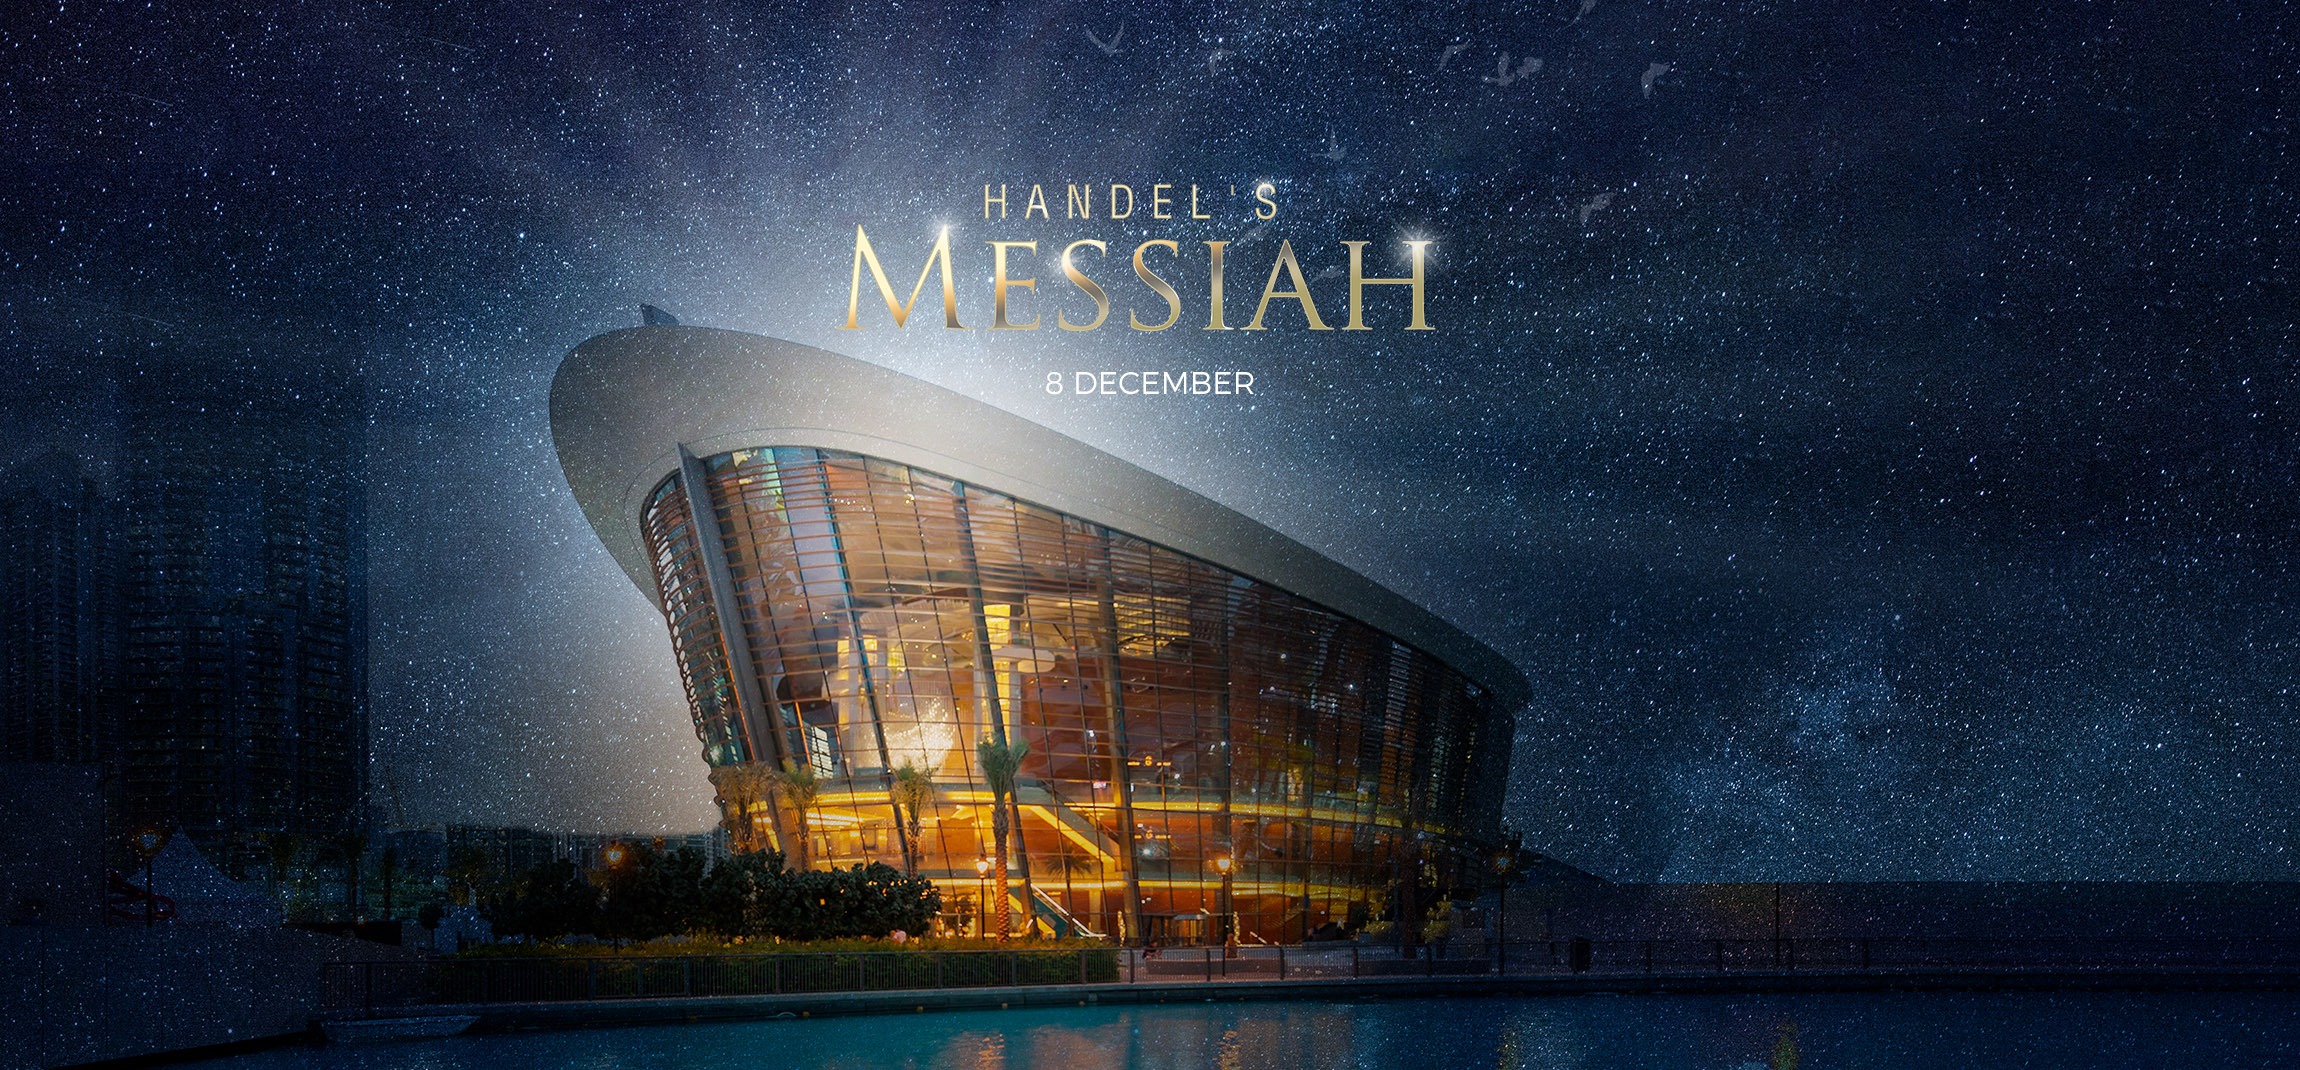 Handel’s Messiah at Dubai Opera - Coming Soon in UAE